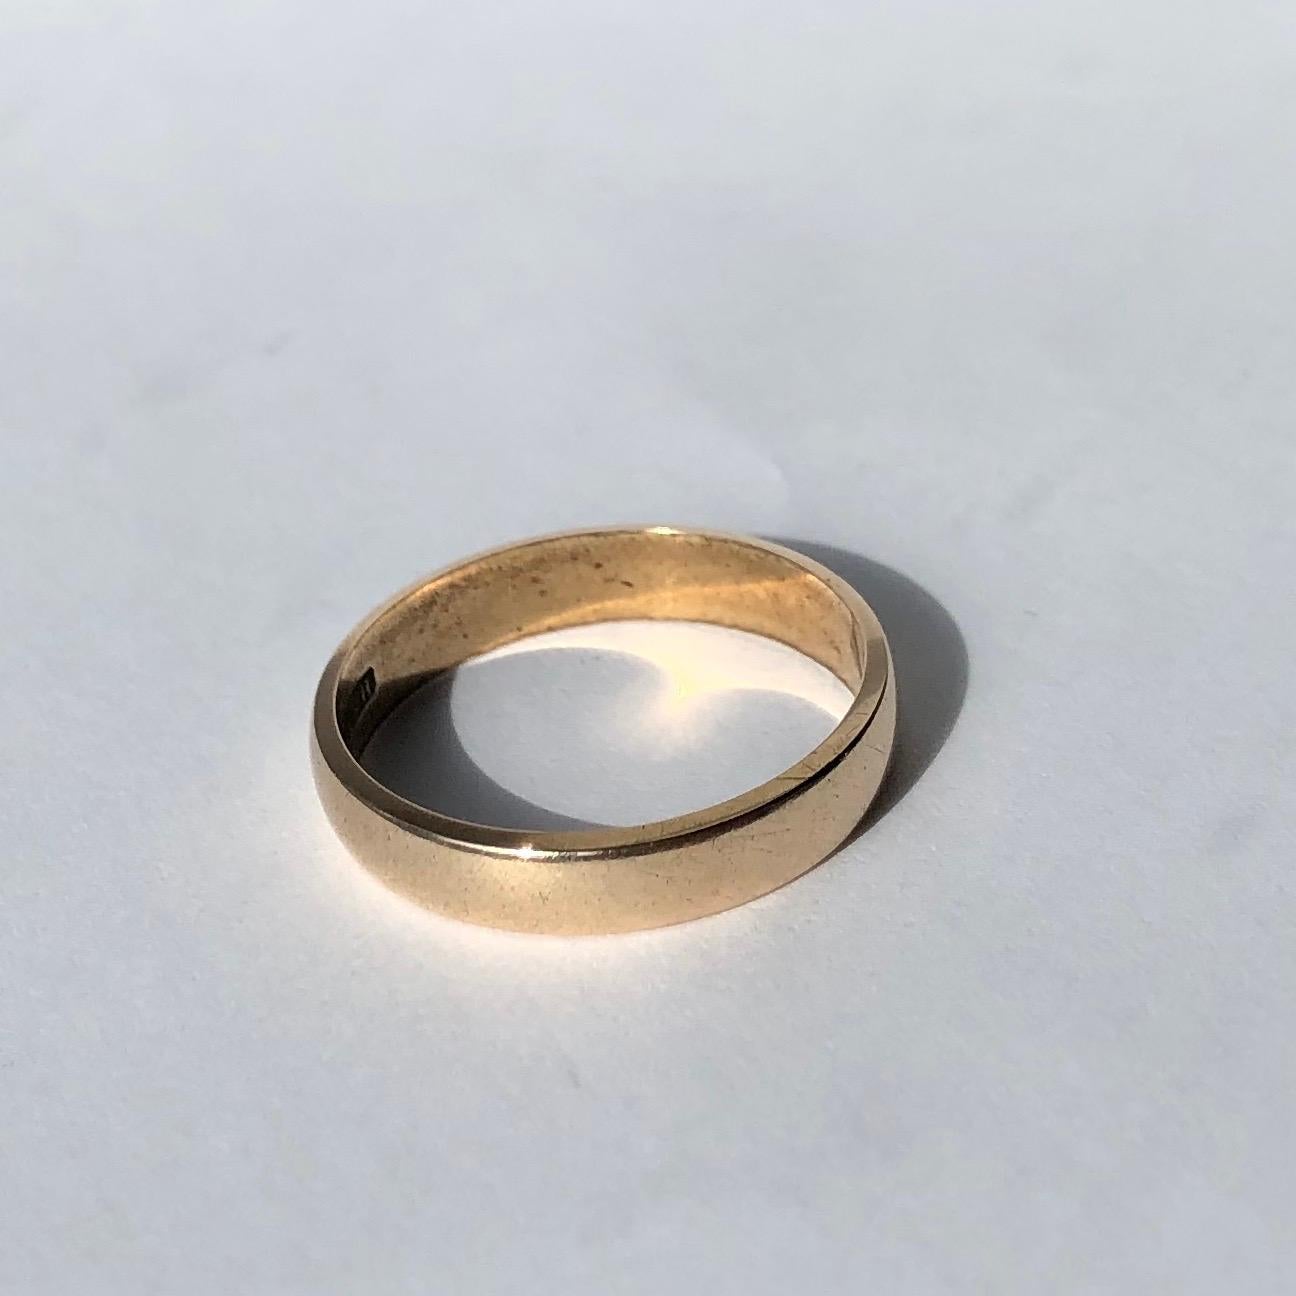 Ein Band aus 9-karätigem Gold ist der perfekte klassische Ehering oder ein großartiges Stück für den täglichen Gebrauch. Hergestellt in Birmingham, England. 

Ringgröße: P 1/2 oder 7 3/4
Bandbreite: 4mm 

Gewicht: 2,59g